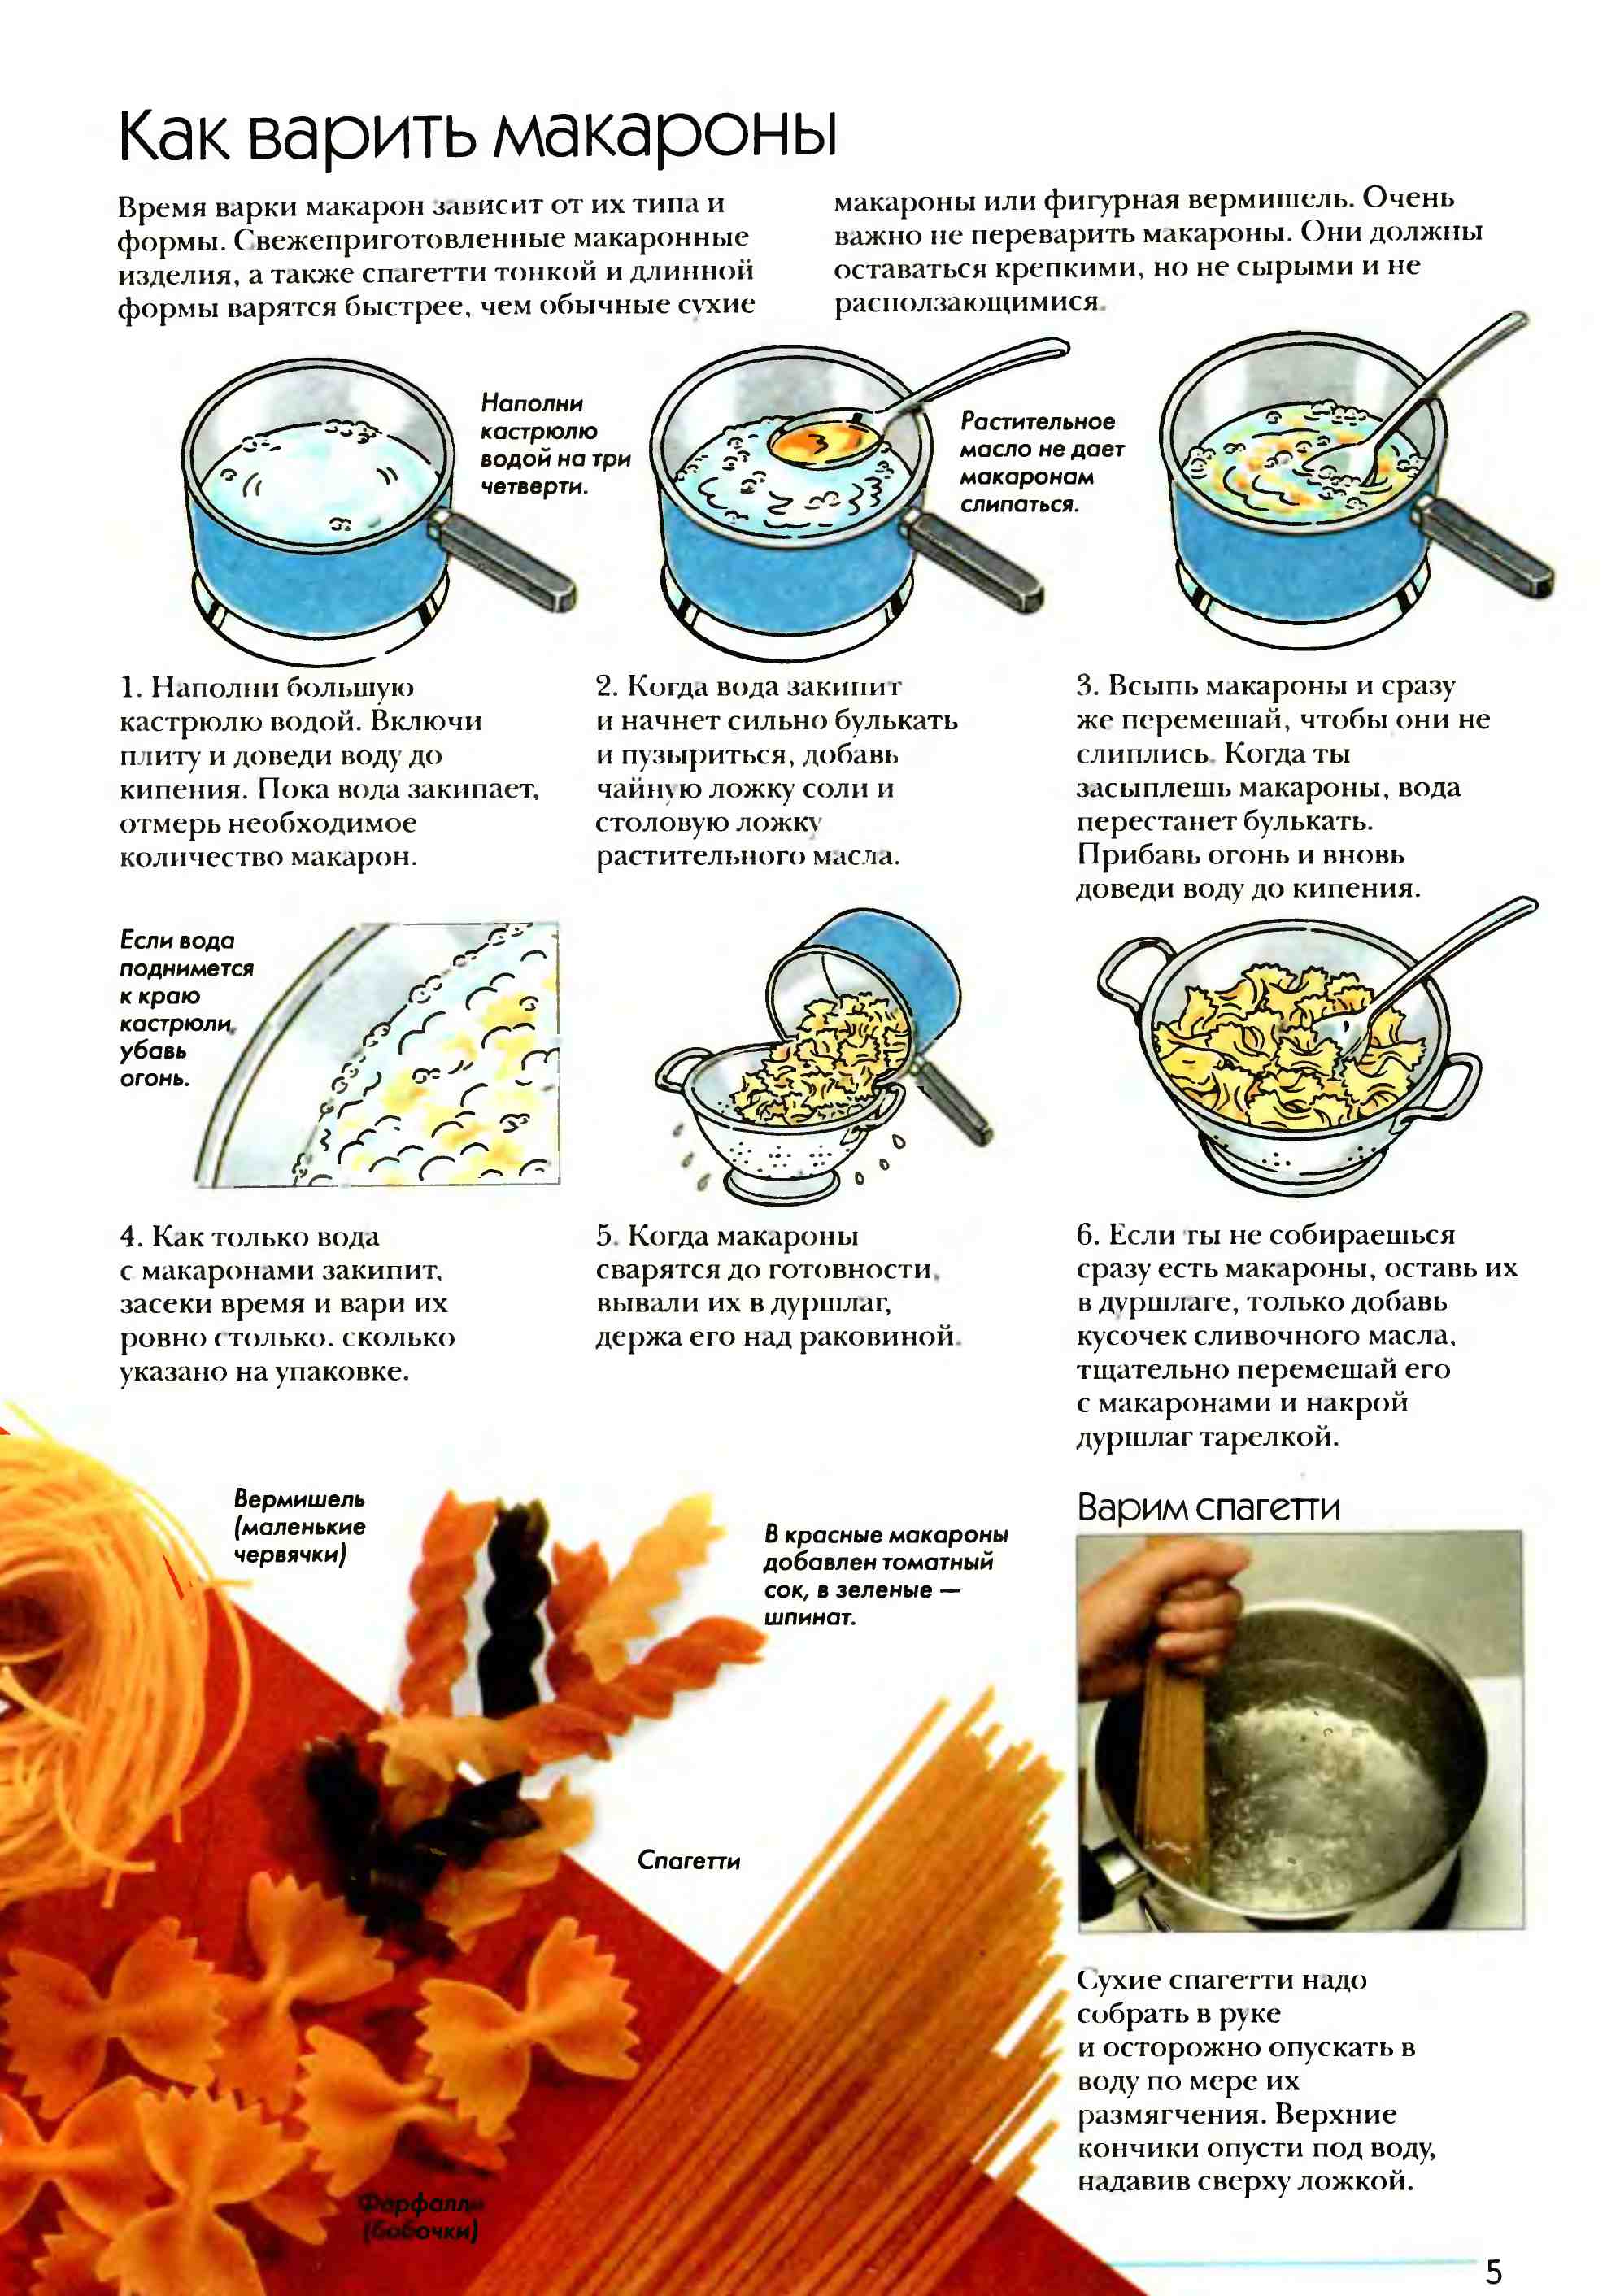 Как правильно сварить макароны и приготовить пасту